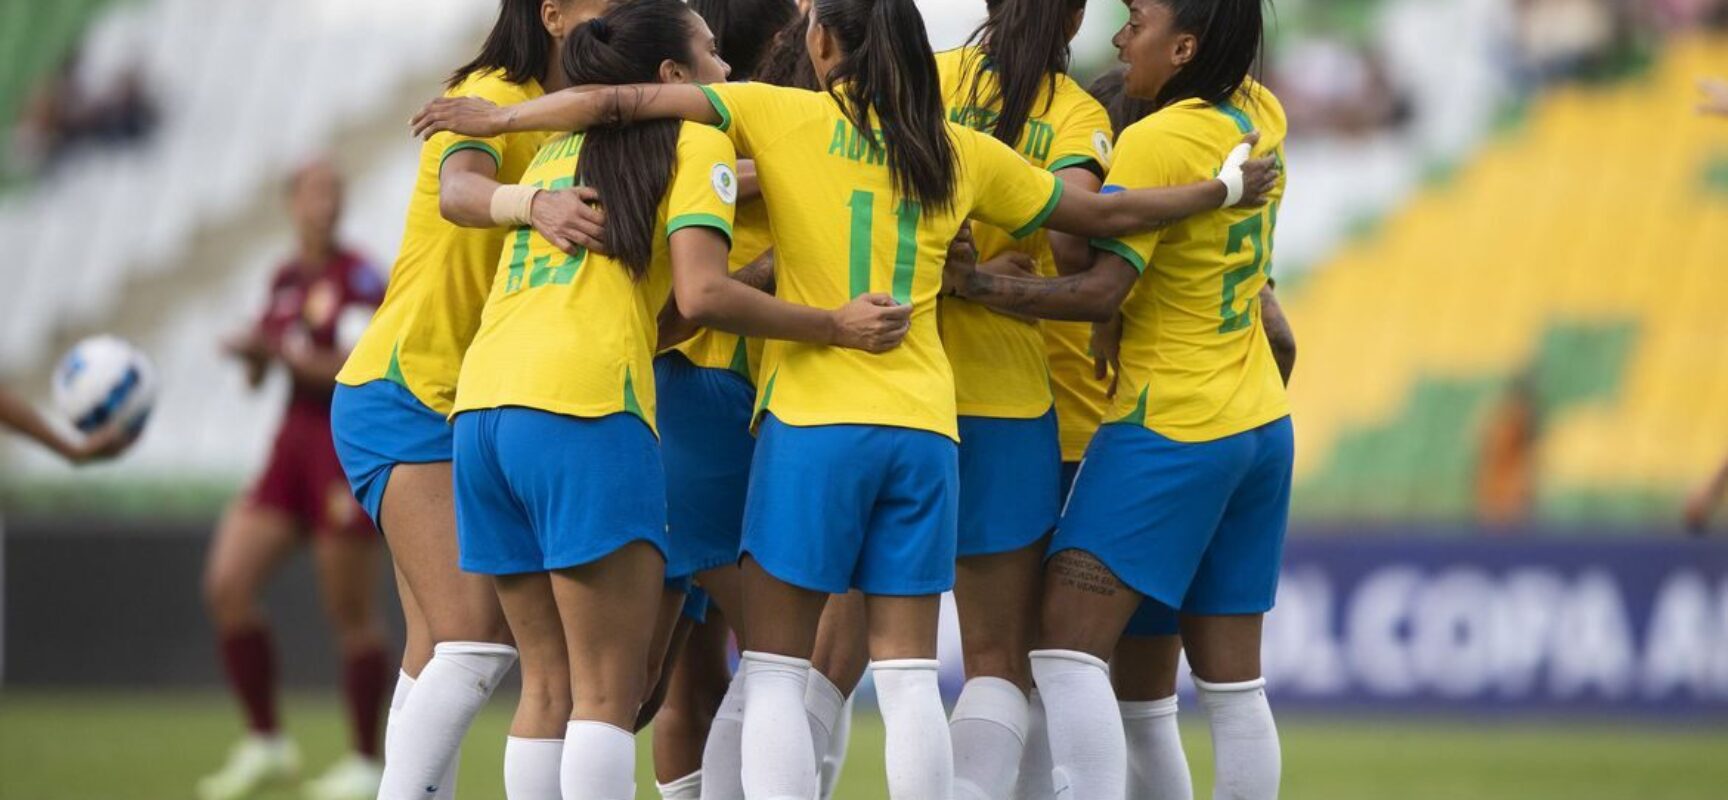 Seleção encara Colômbia em busca do 8º título da Copa América Feminina